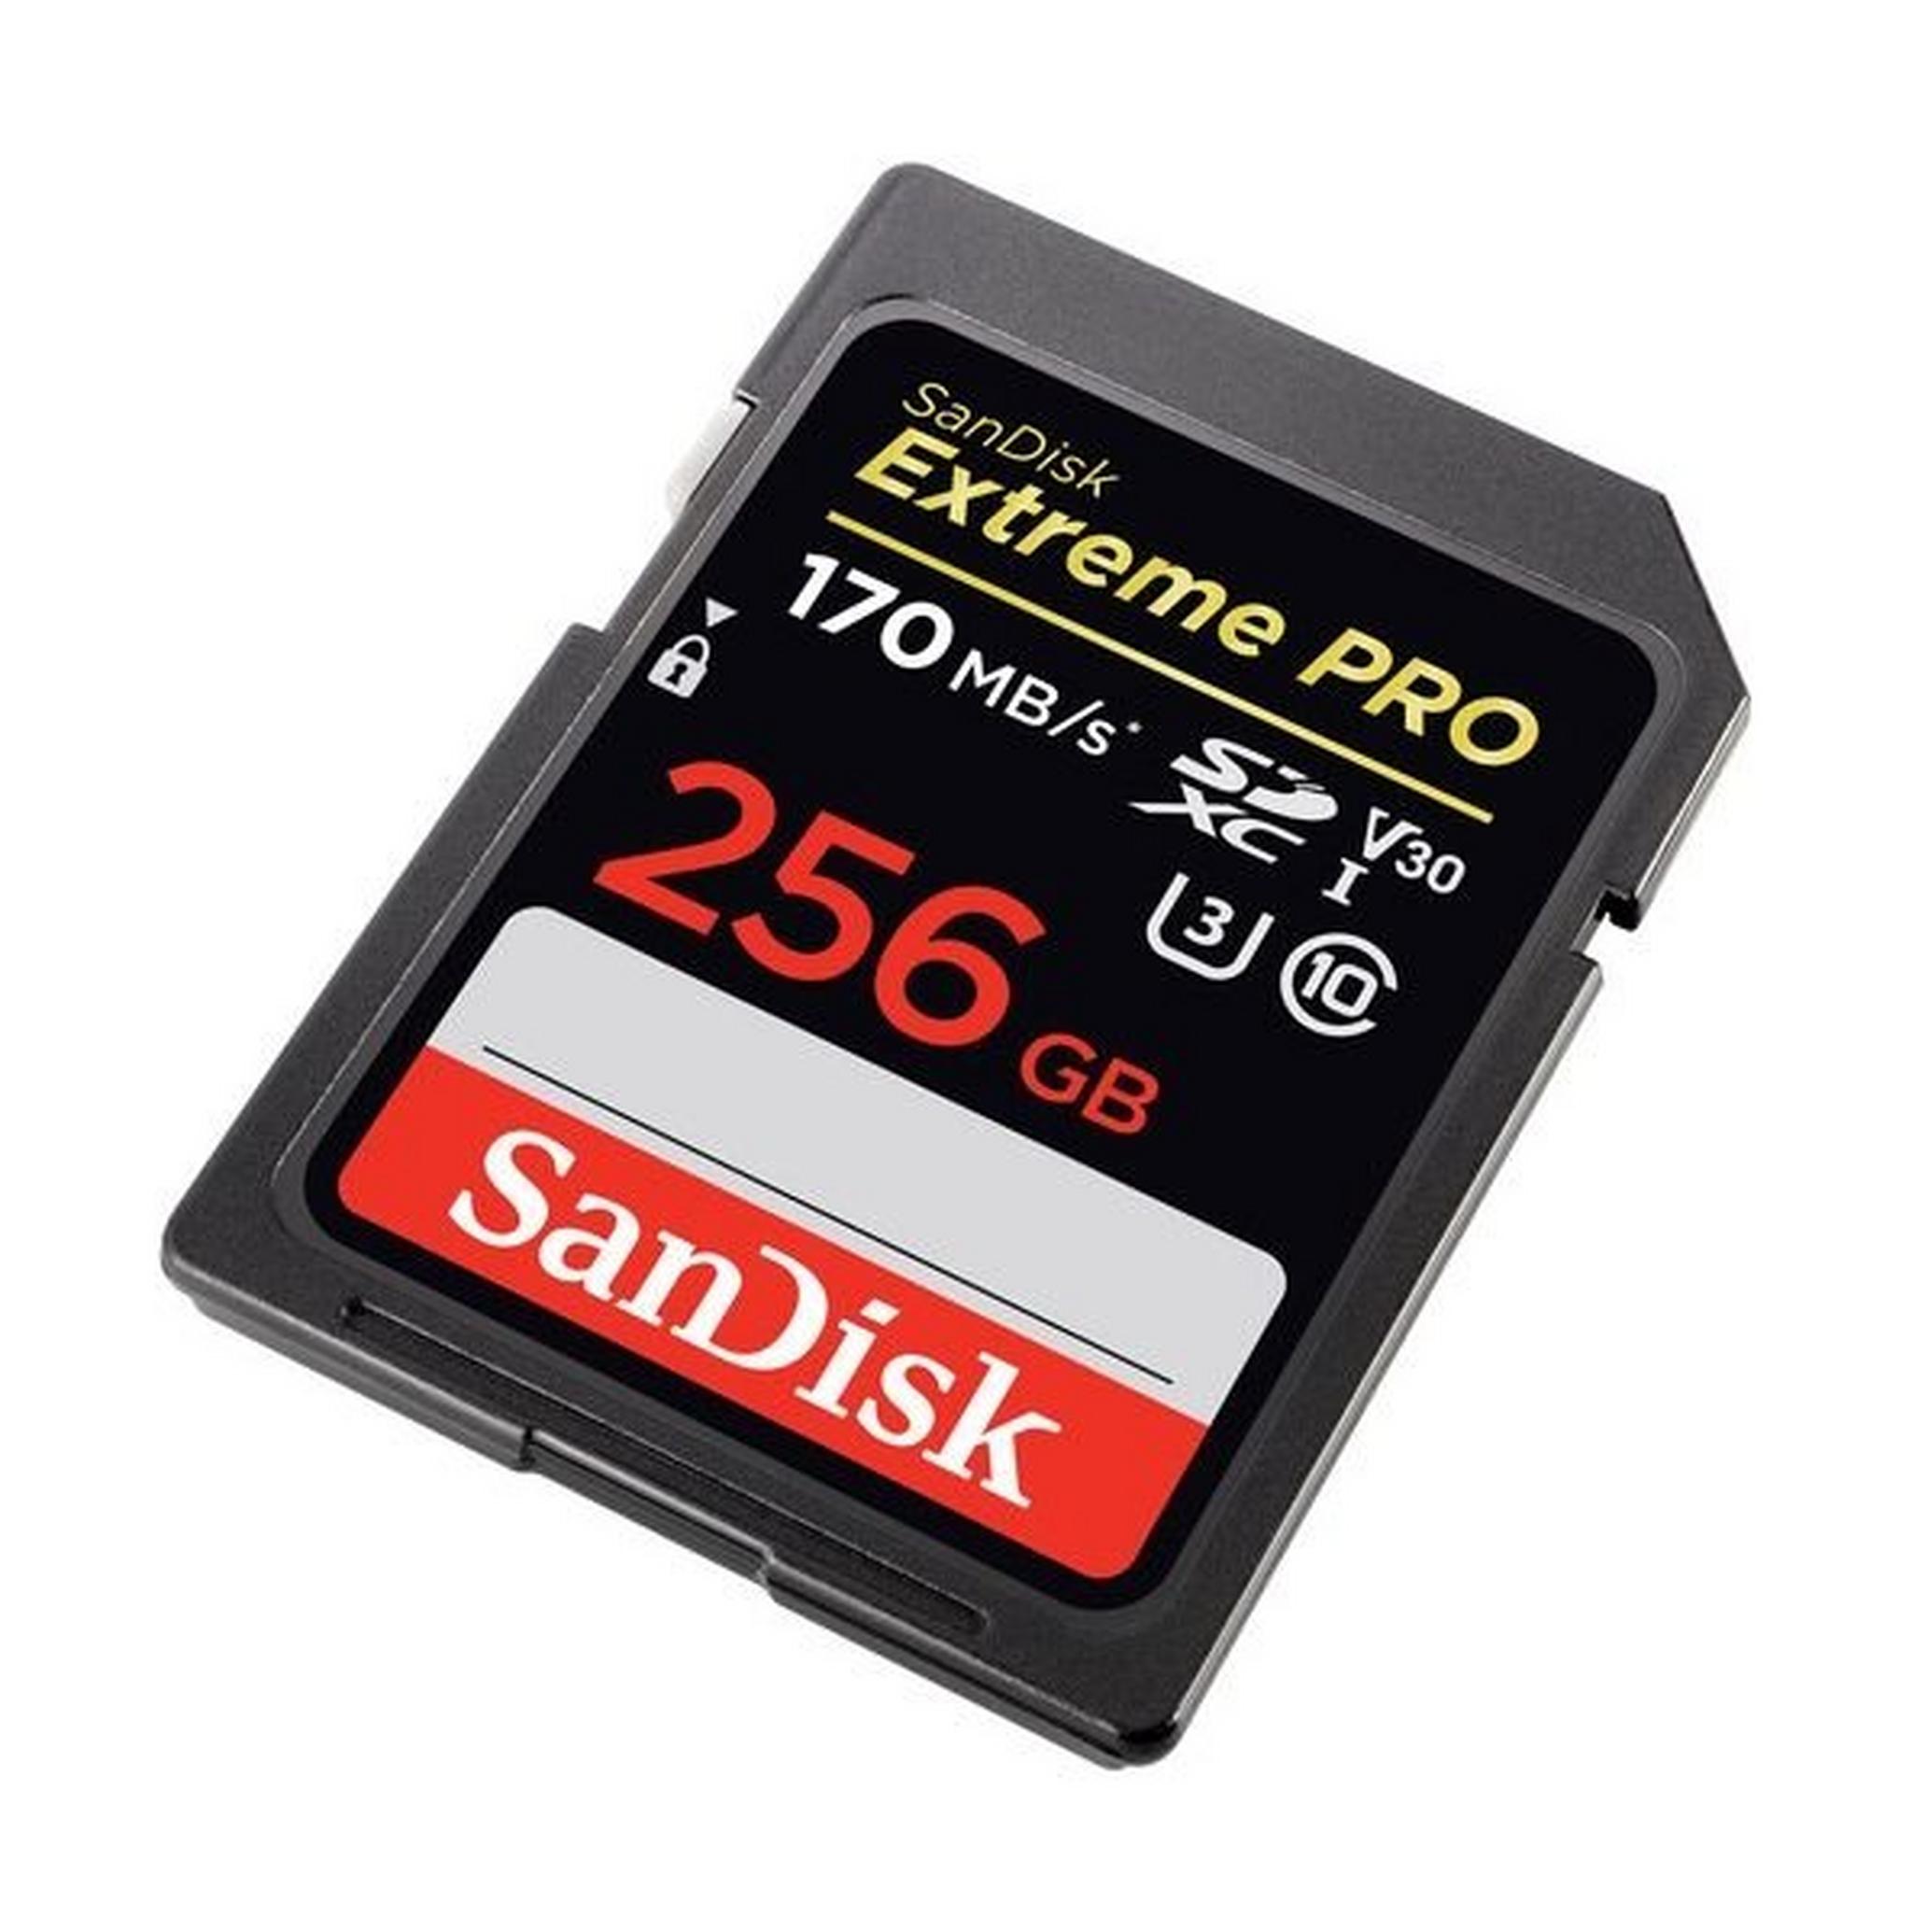 SanDisk Extreme PRO UHS-I SDXC Memory Card - 256GB